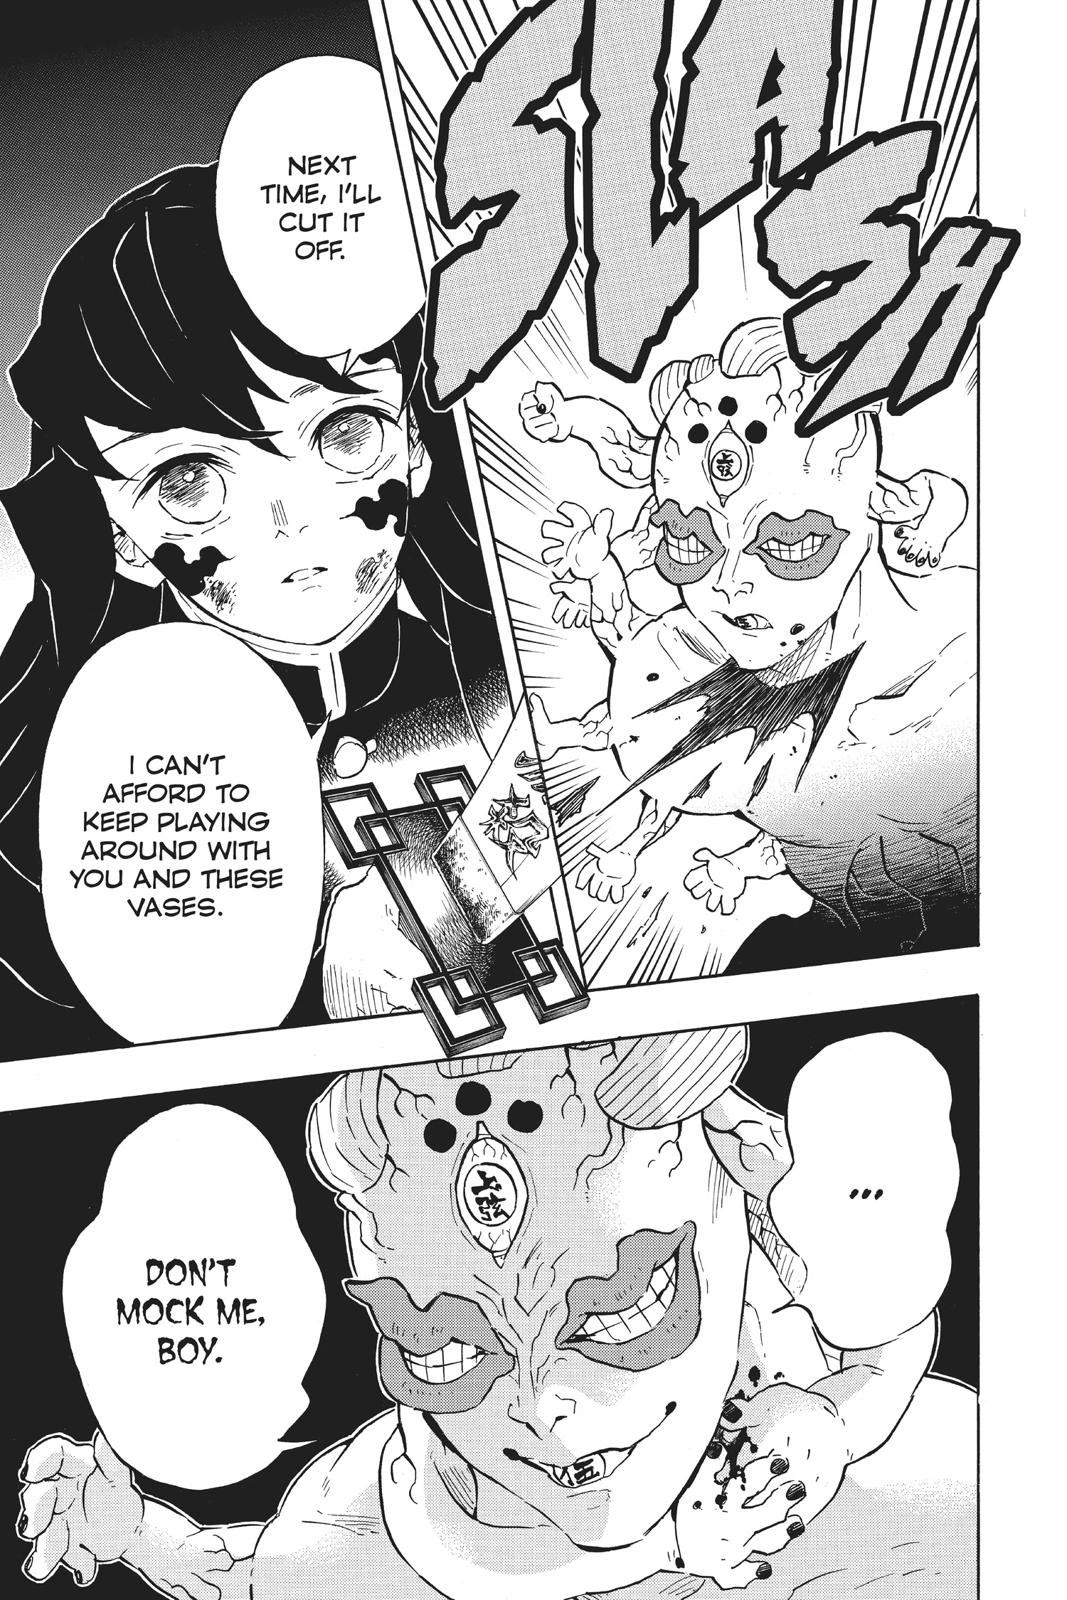 Demon Slayer Manga Manga Chapter - 119 - image 11